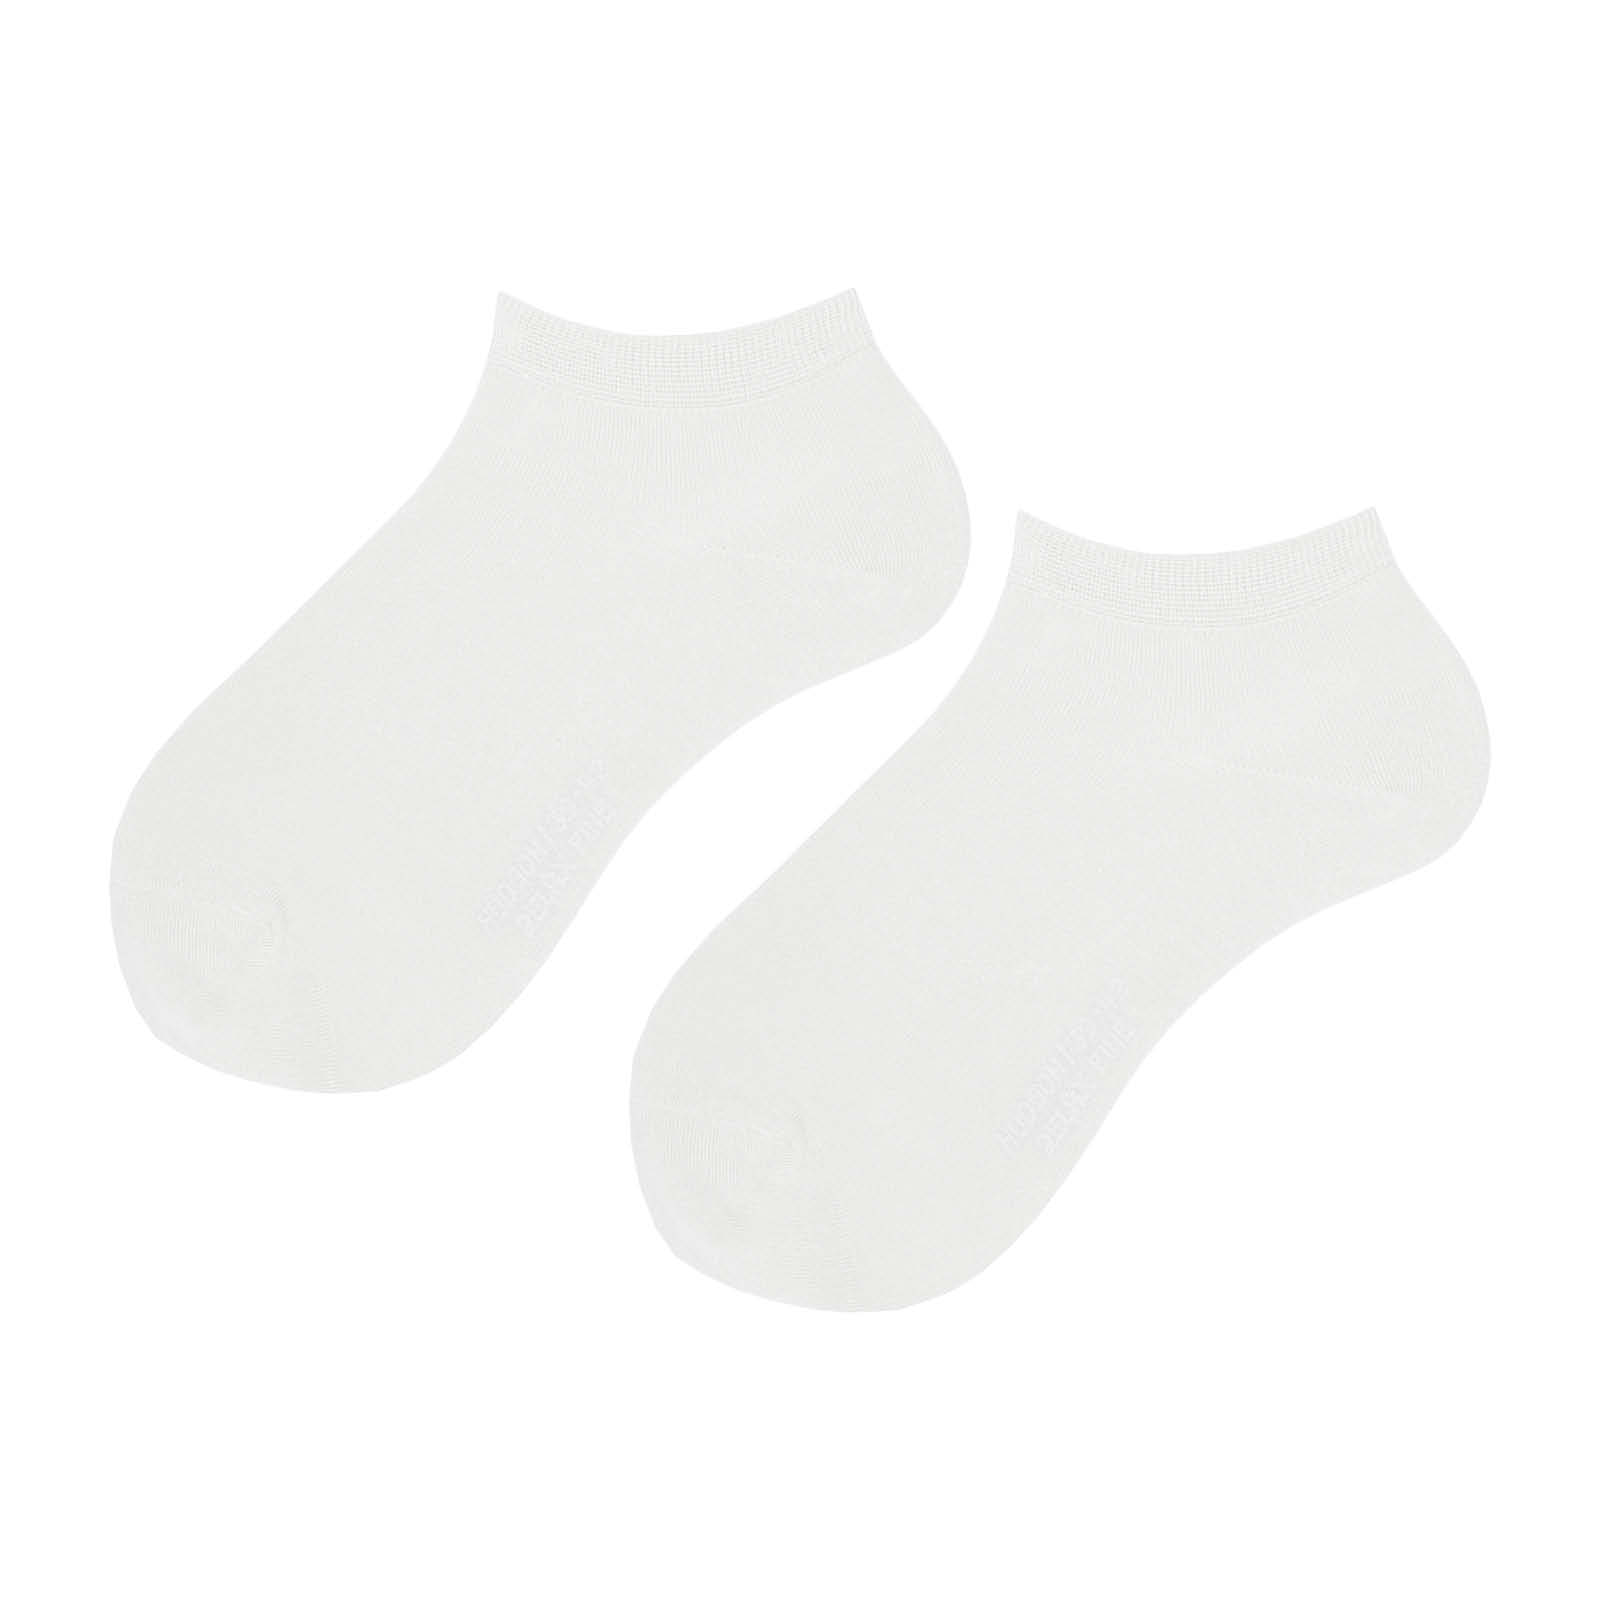 HUDSON Damen RELAX FINE -  35/38 - Sneaker Socken mit softer Qualität - White (Weiß)